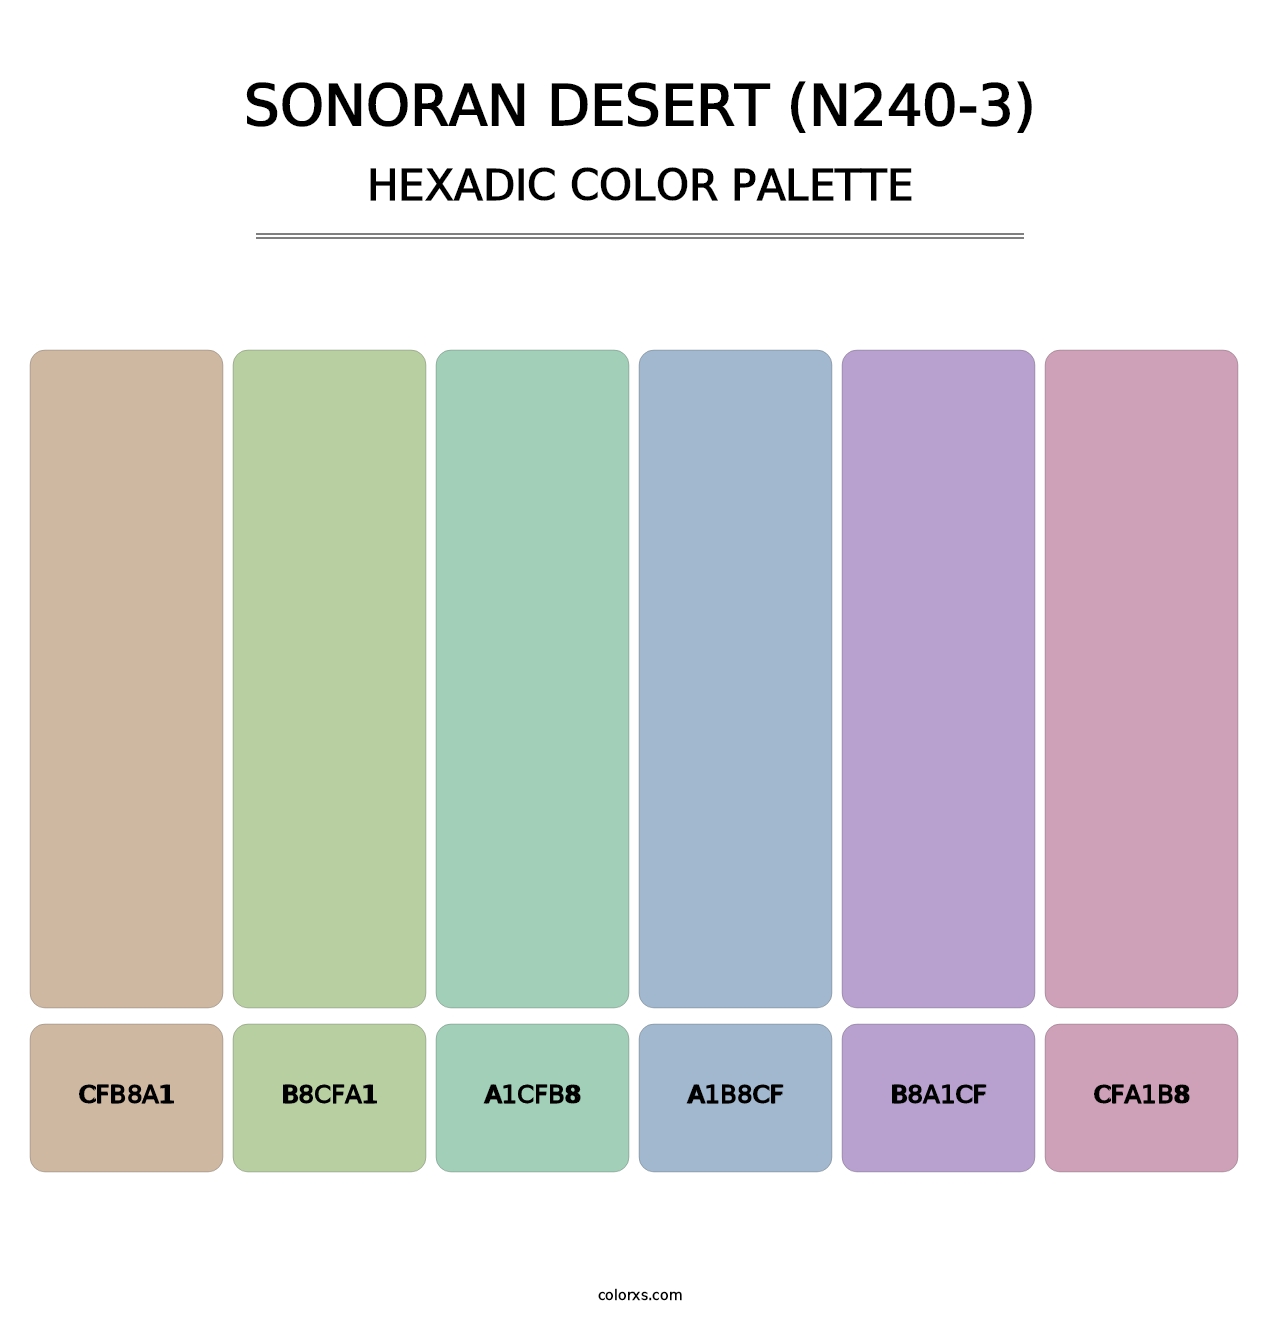 Sonoran Desert (N240-3) - Hexadic Color Palette